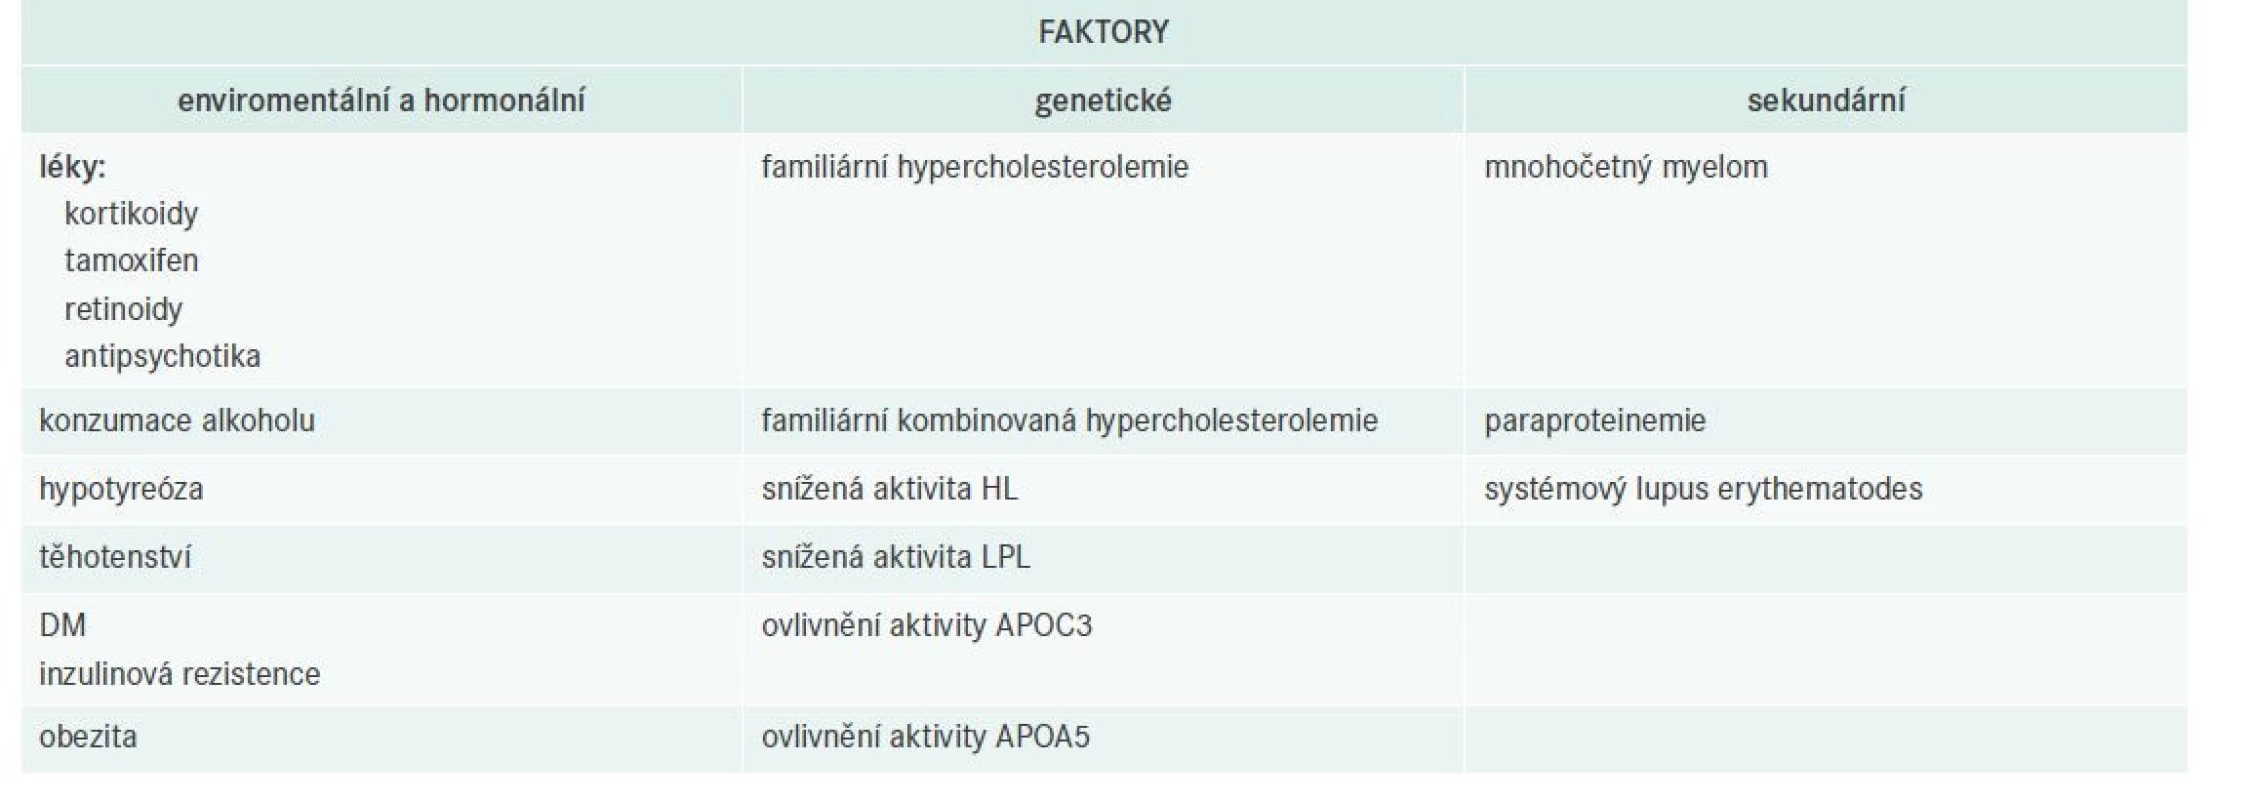 Faktory asociované s manifestací dyslipidemie u pacientů s APOE2/E2 familiární dysbetalipoproteinemií.
Upraveno dle [30]